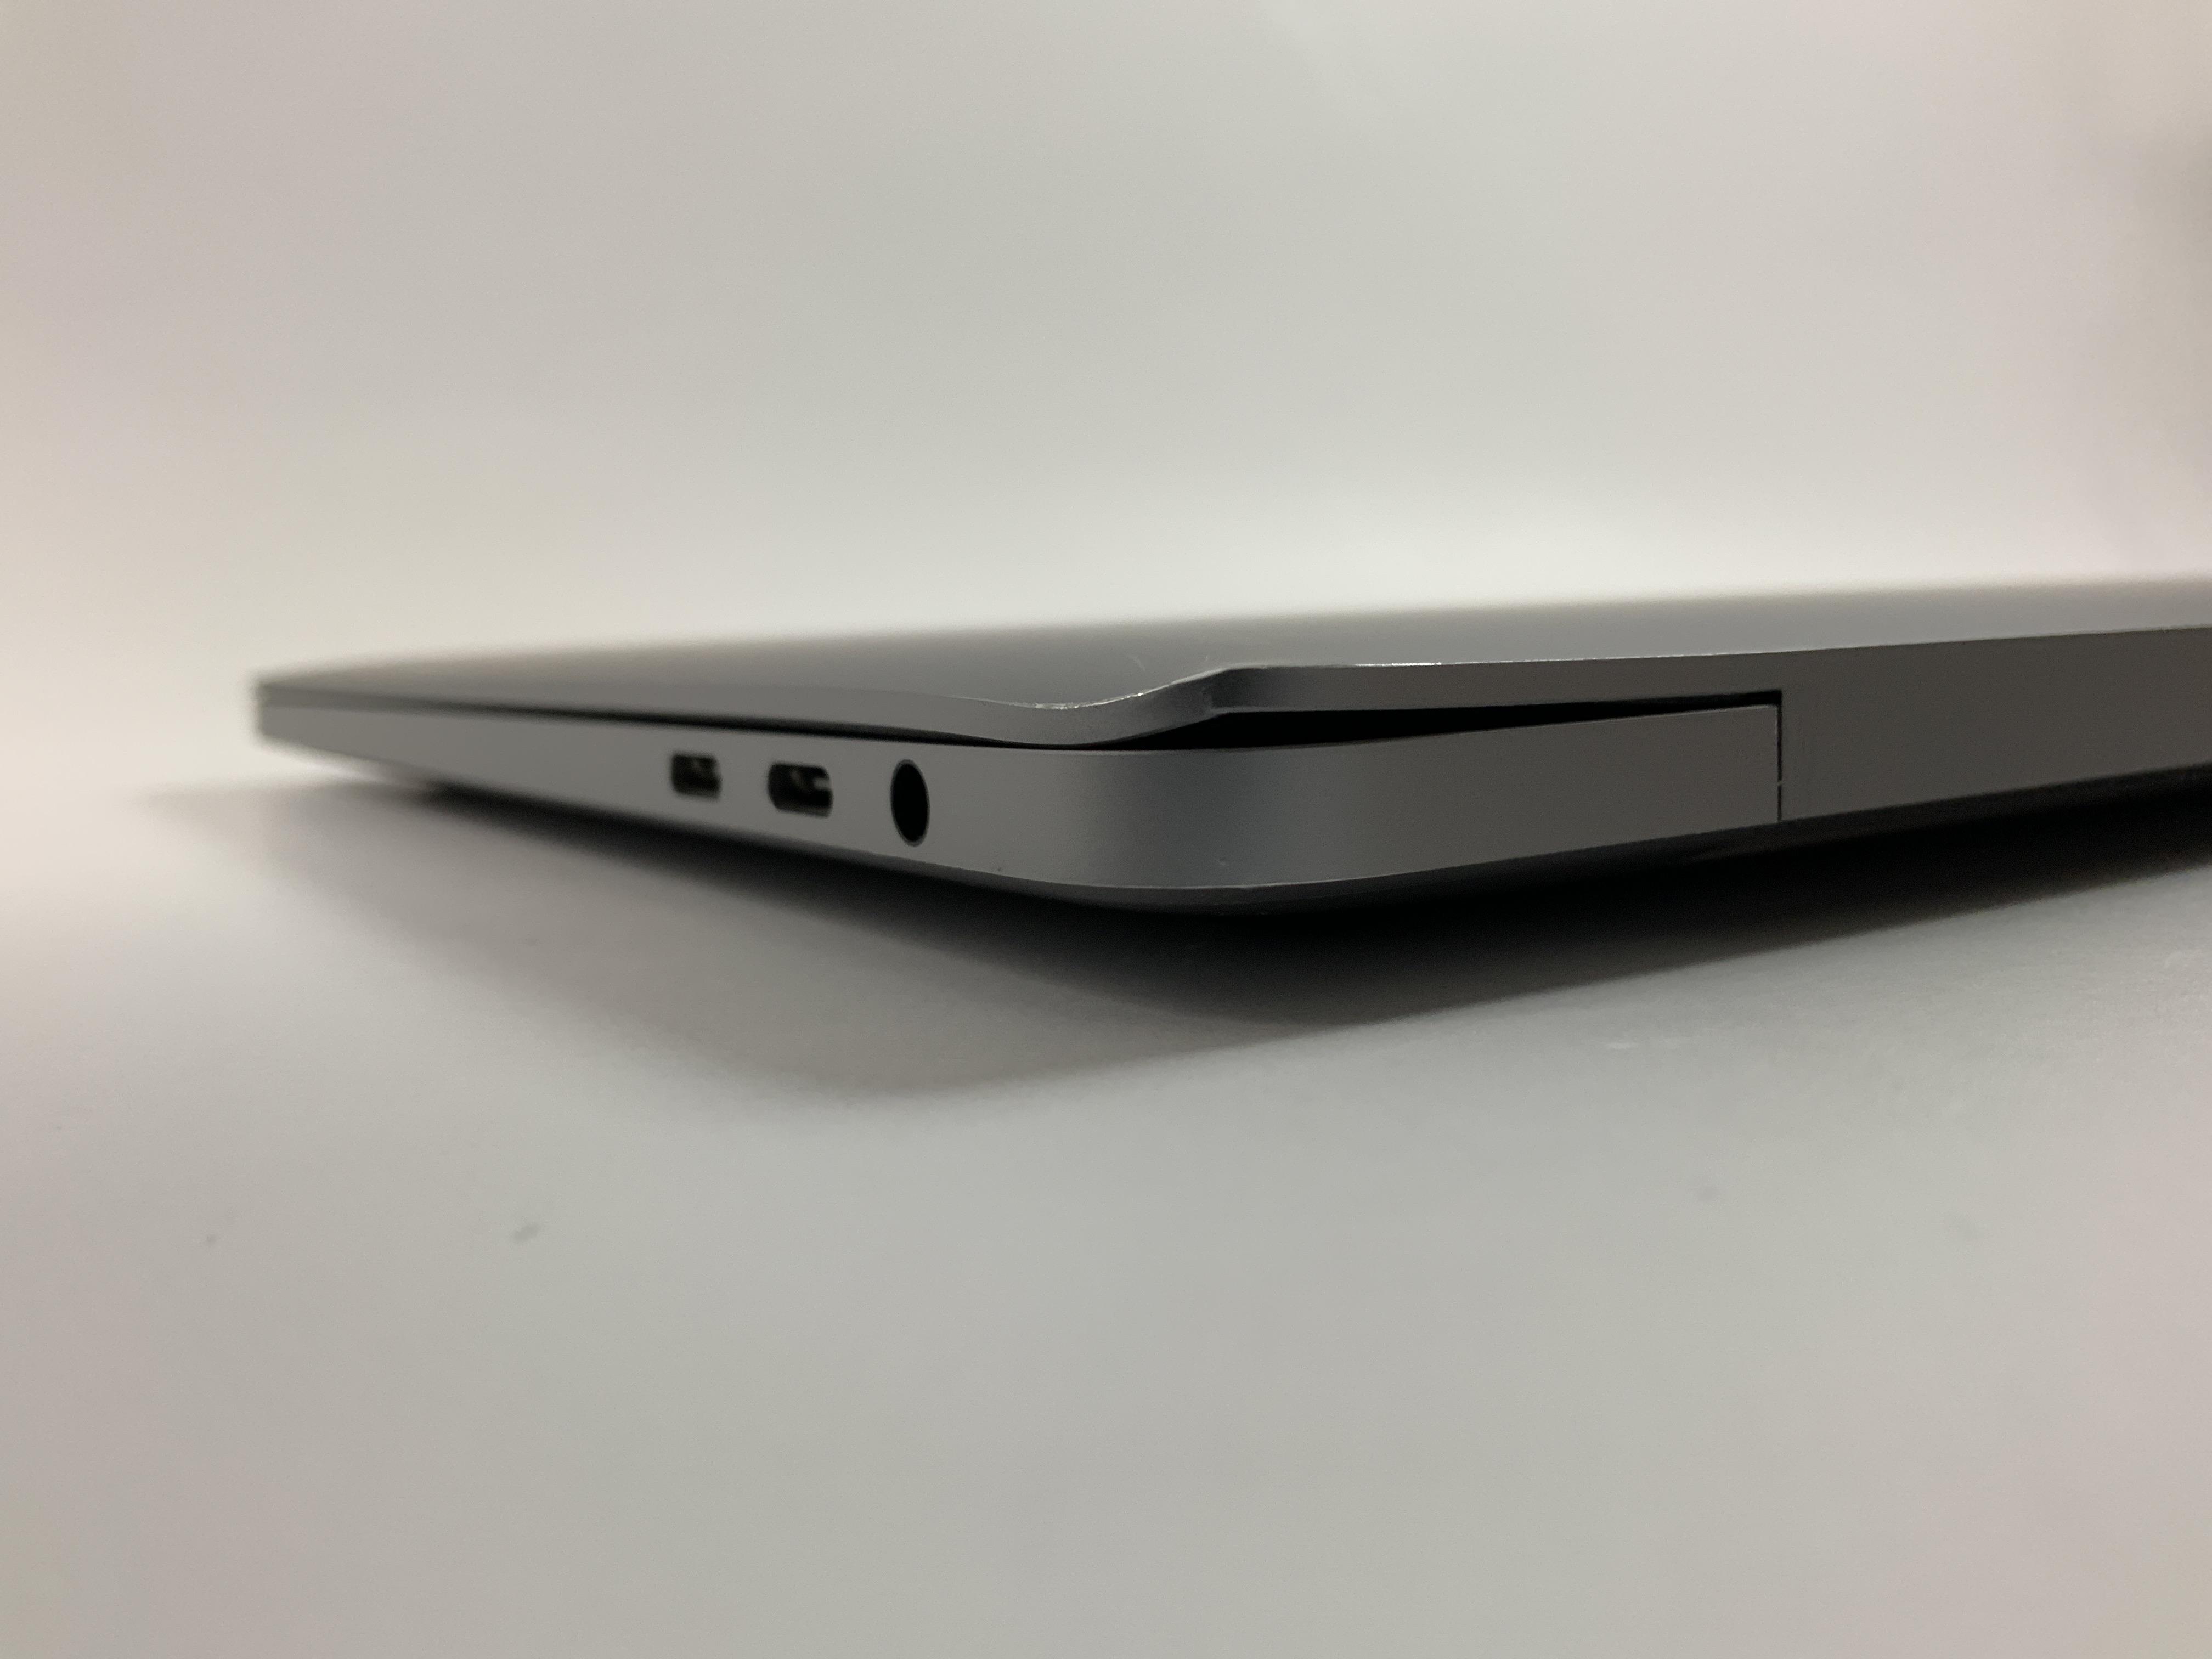 MacBook Pro 13" 4TBT Mid 2020 (Intel Quad-Core i5 2.0 GHz 16 GB RAM 512 GB SSD), Space Gray, Intel Quad-Core i5 2.0 GHz, 16 GB RAM, 512 GB SSD, immagine 5